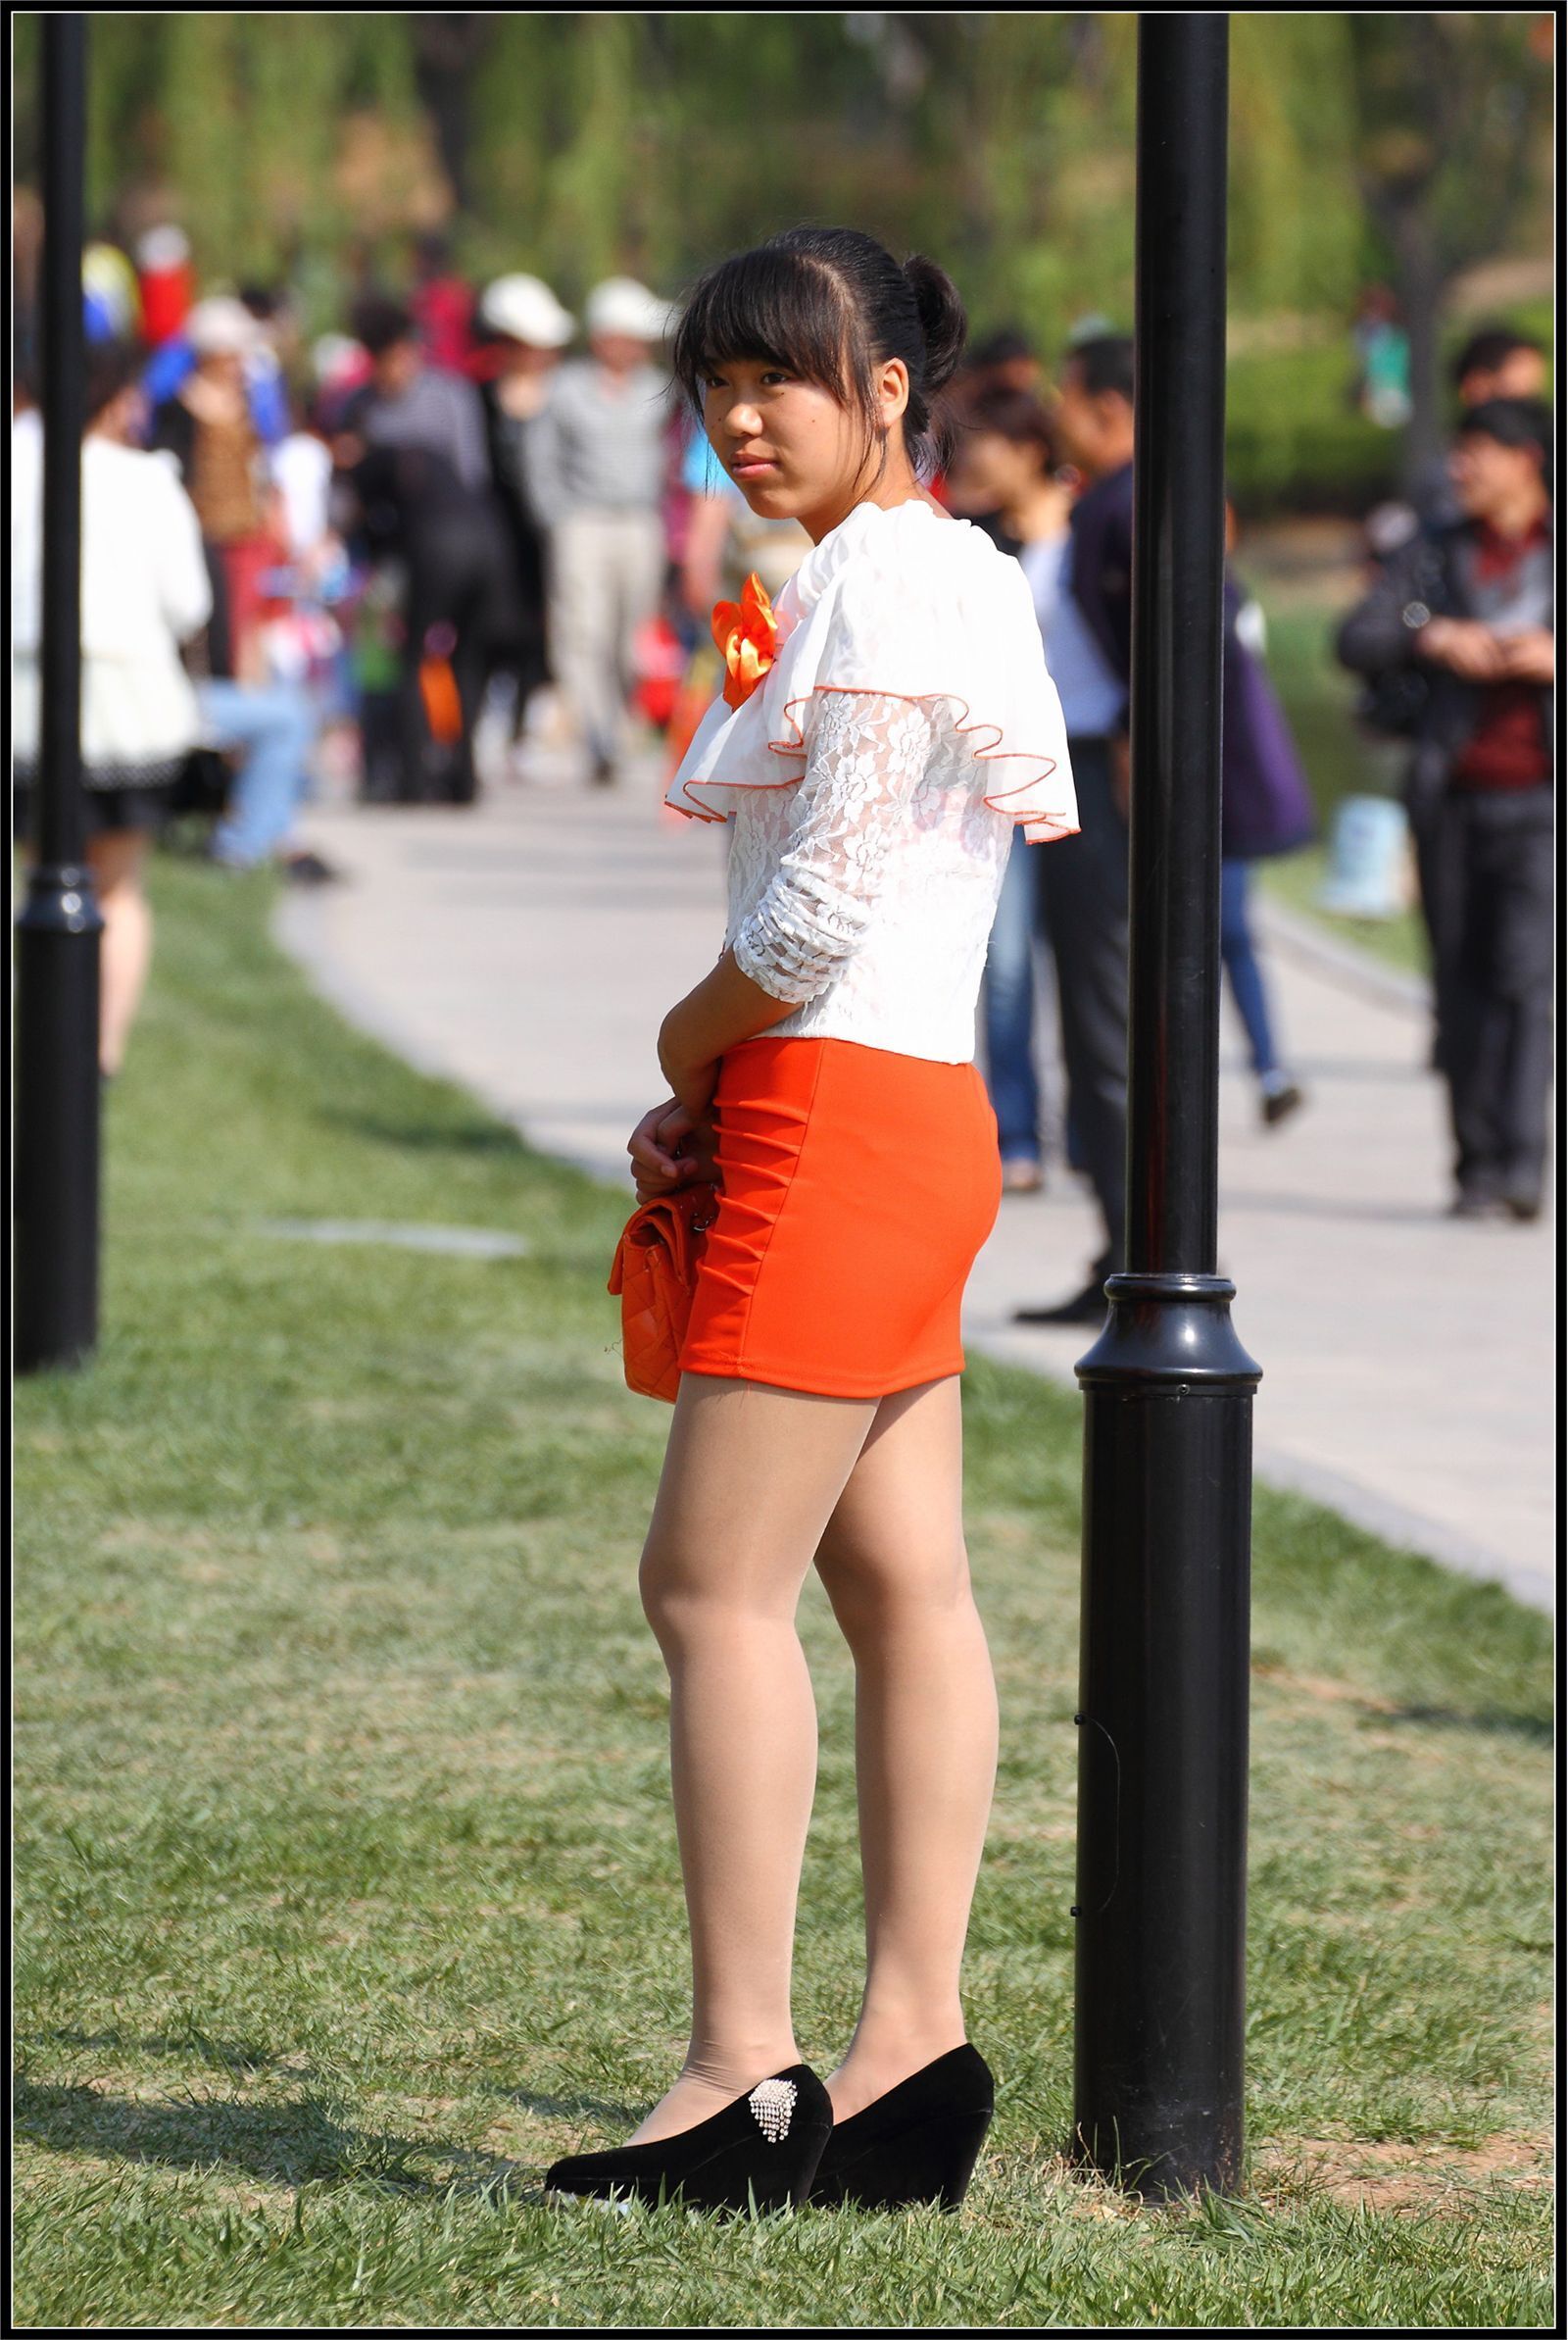 [户外街拍] 2013.09.25 橘红色与白色套裙那么的迷人